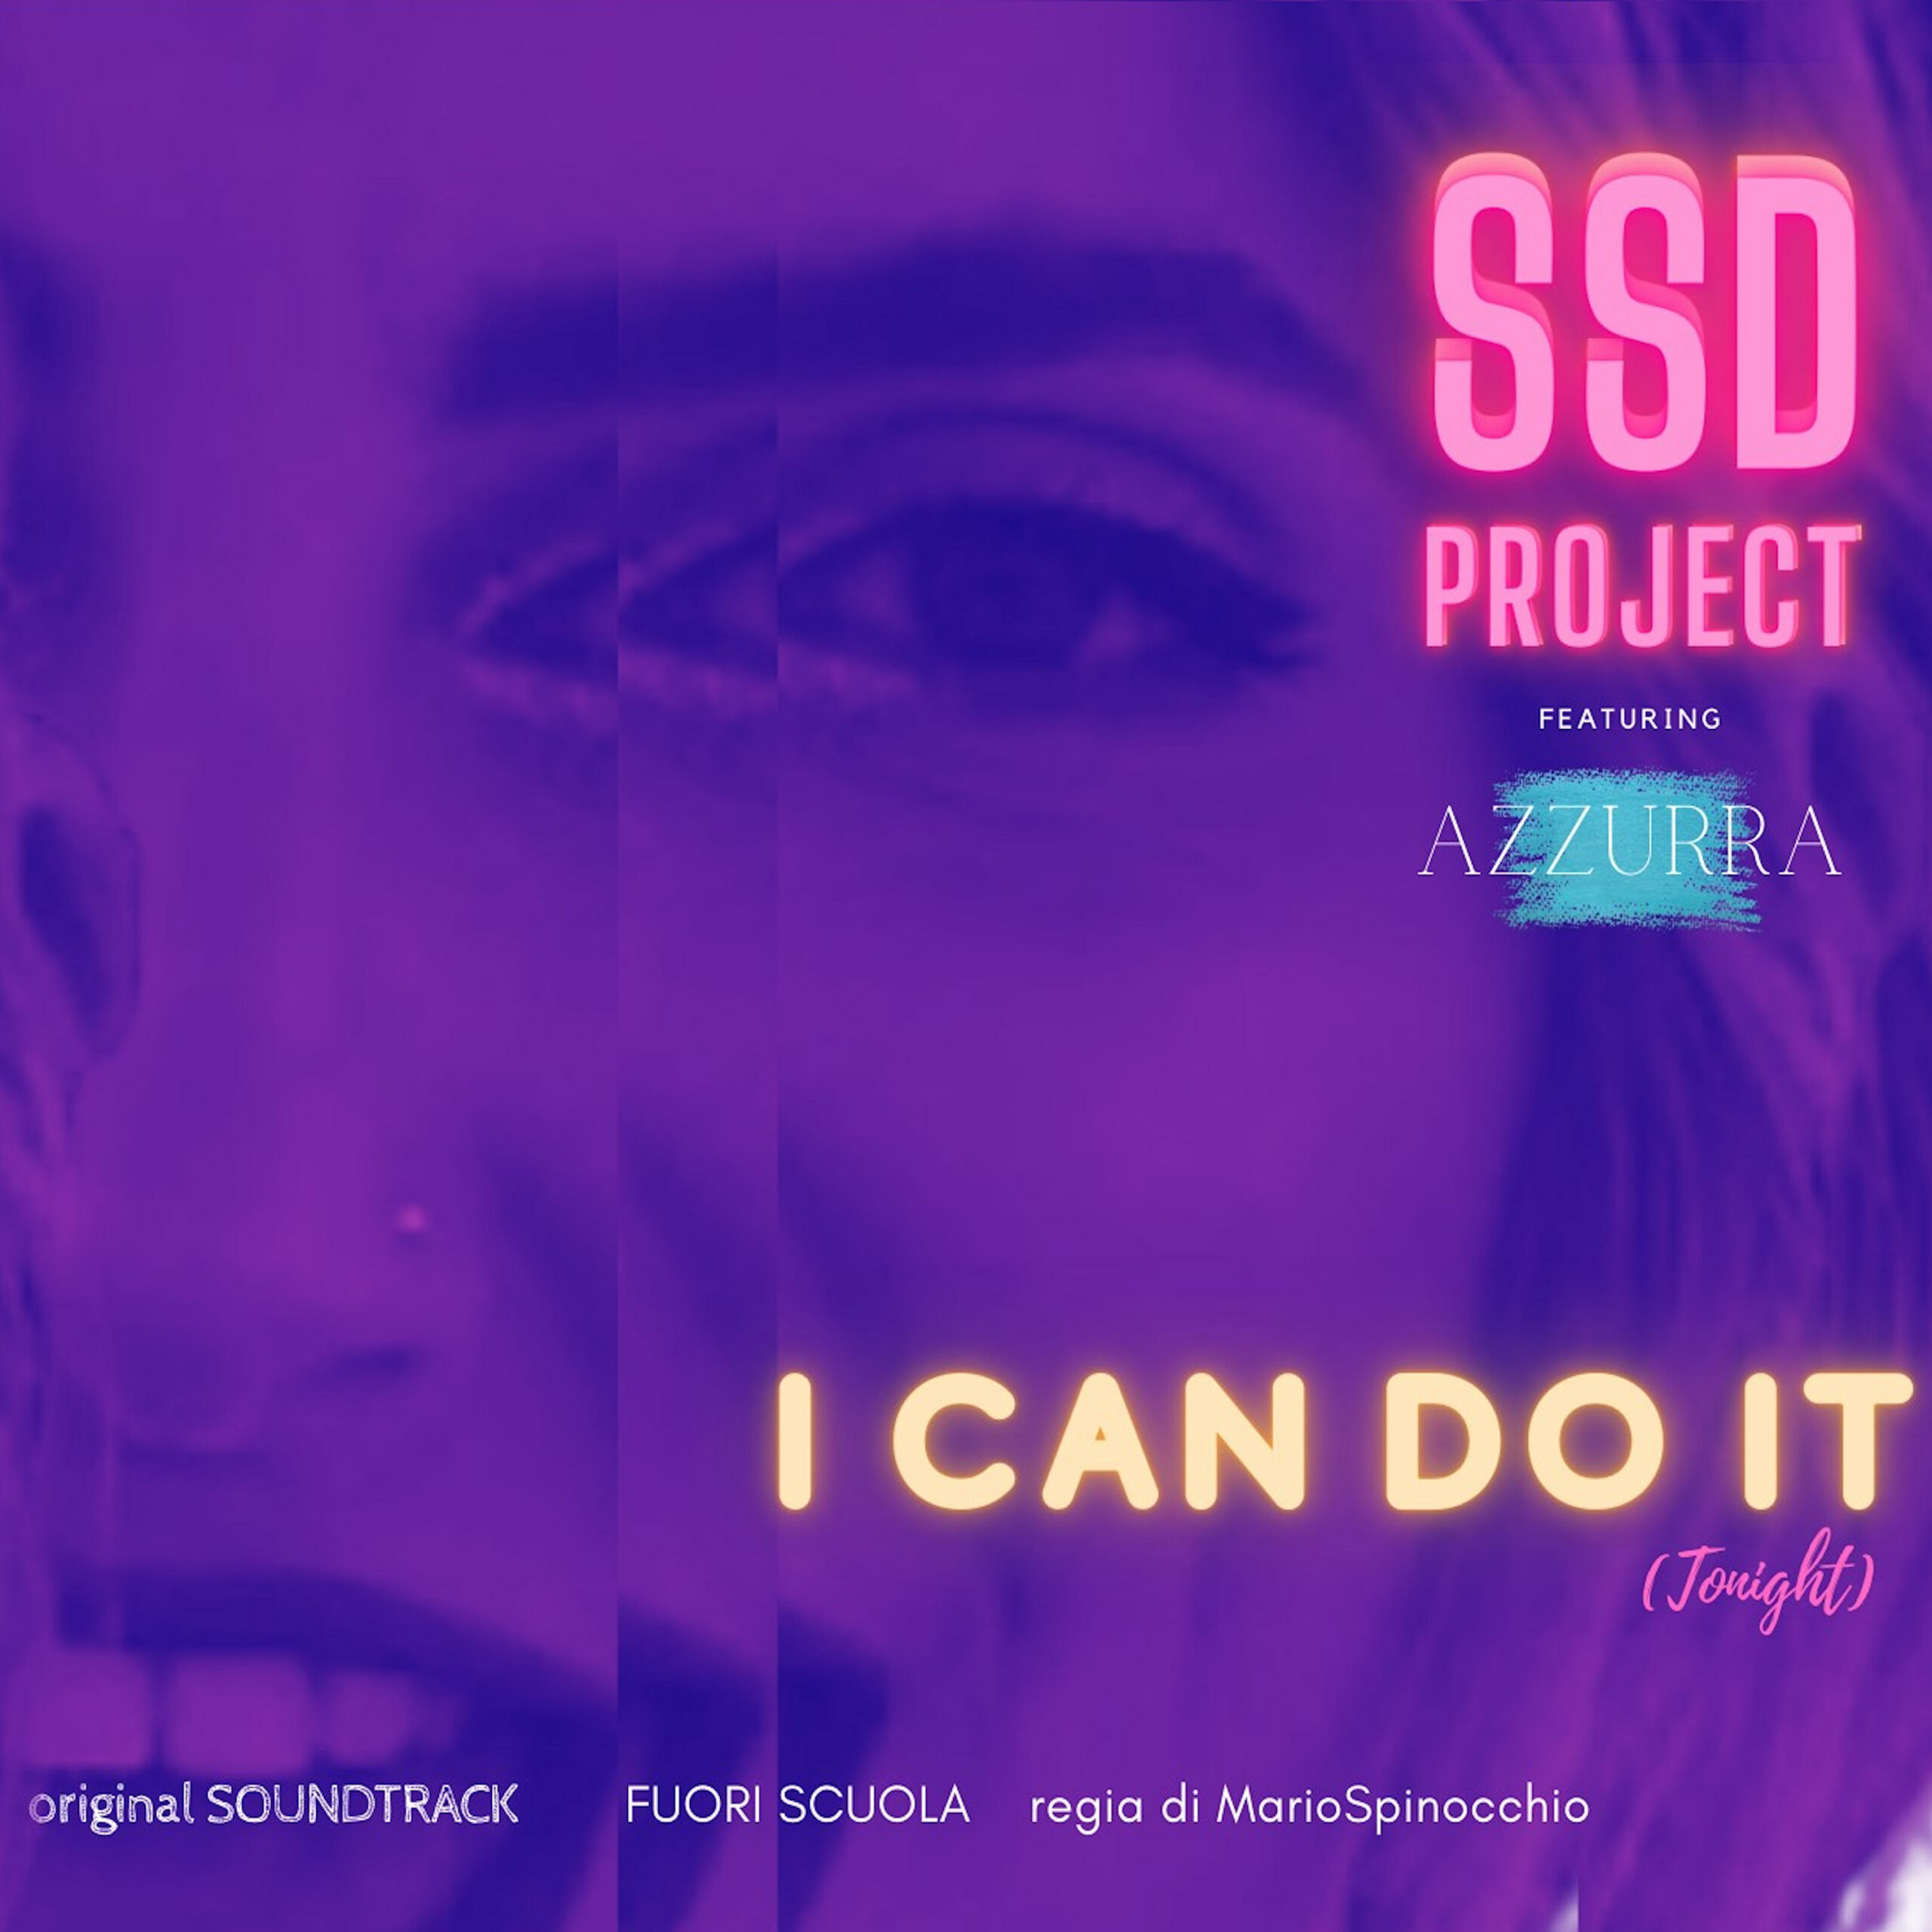 Al momento stai visualizzando “The Project” è il nuovo EP di SSD Project